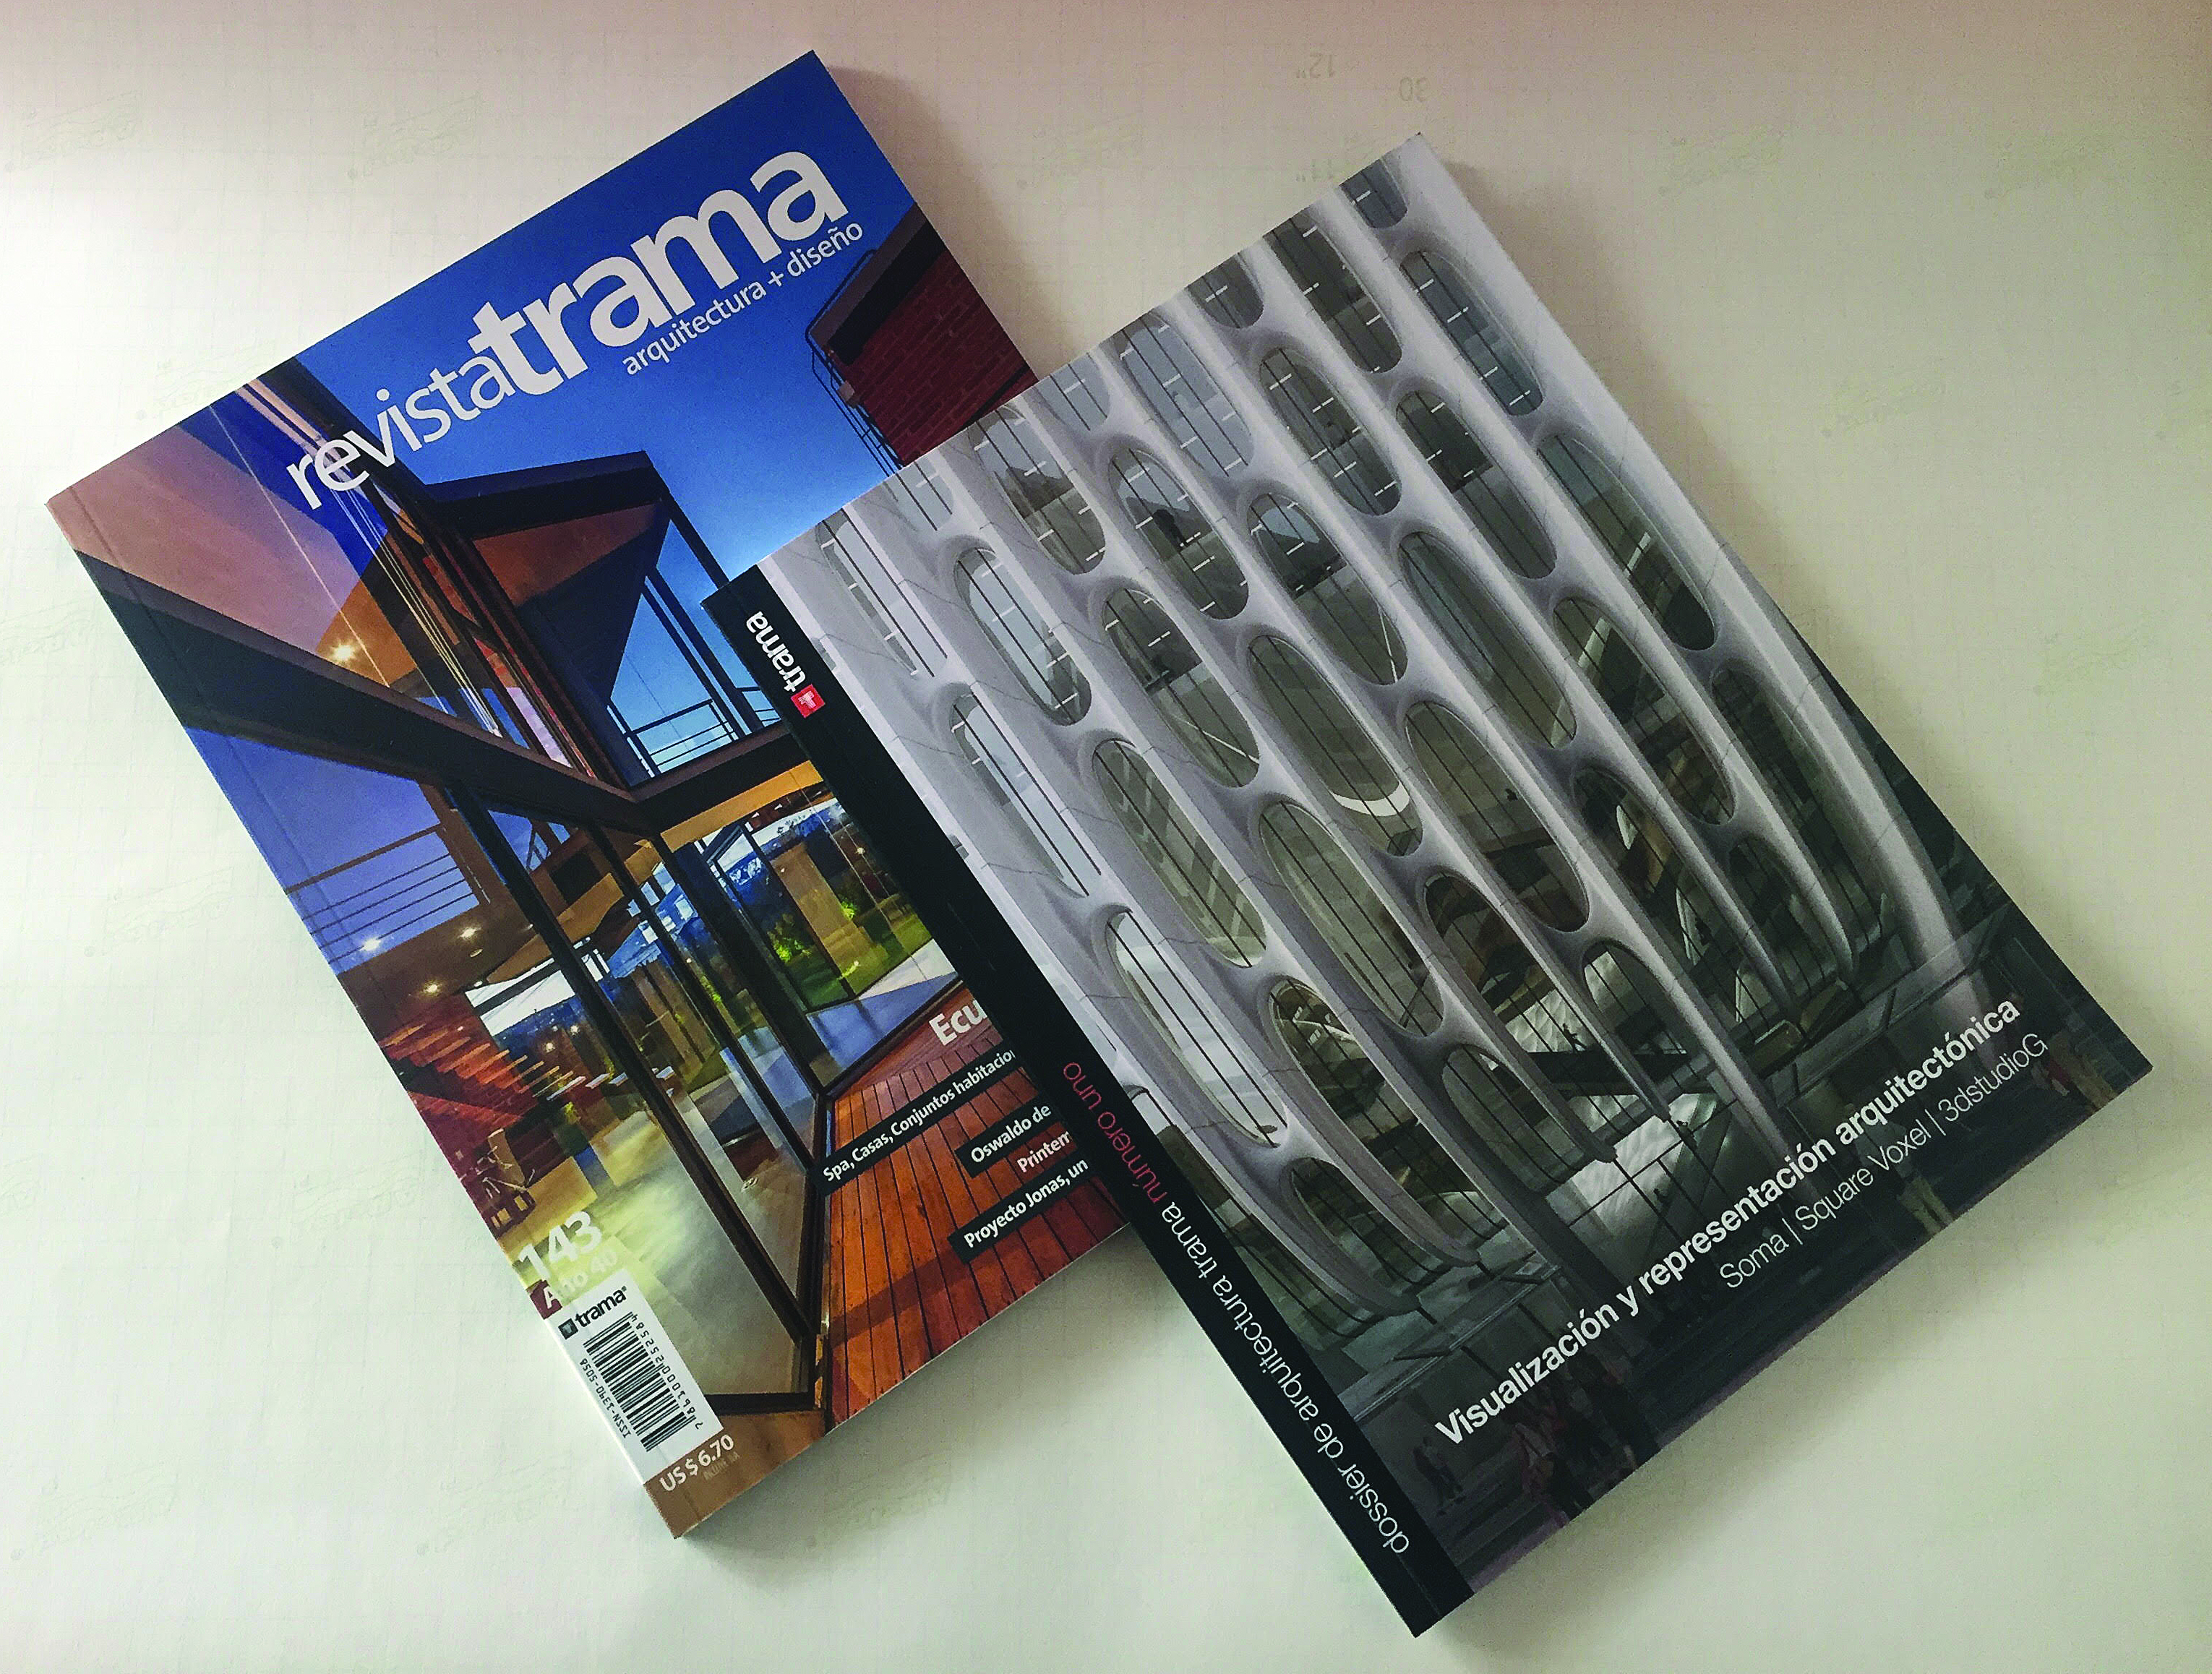 Revista Trama ahora con Dossier sobre visualización arquitectónica